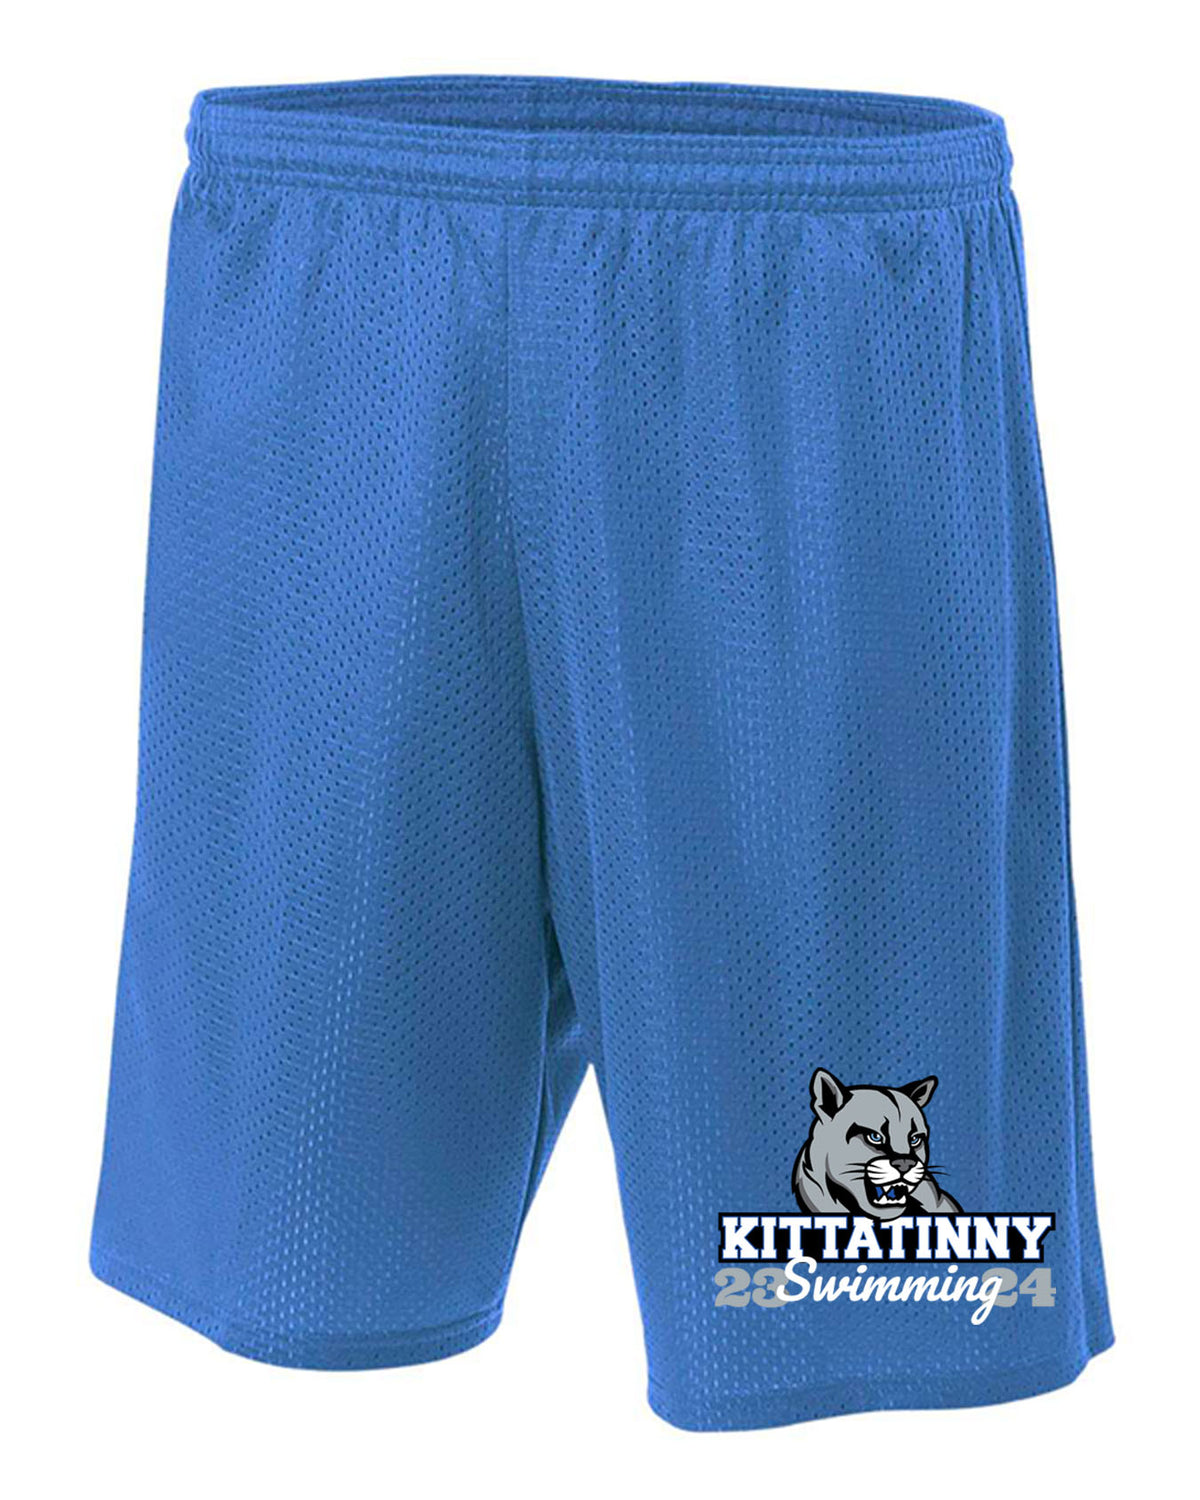 Kittatinny Swimming Design 2 Mesh Shorts